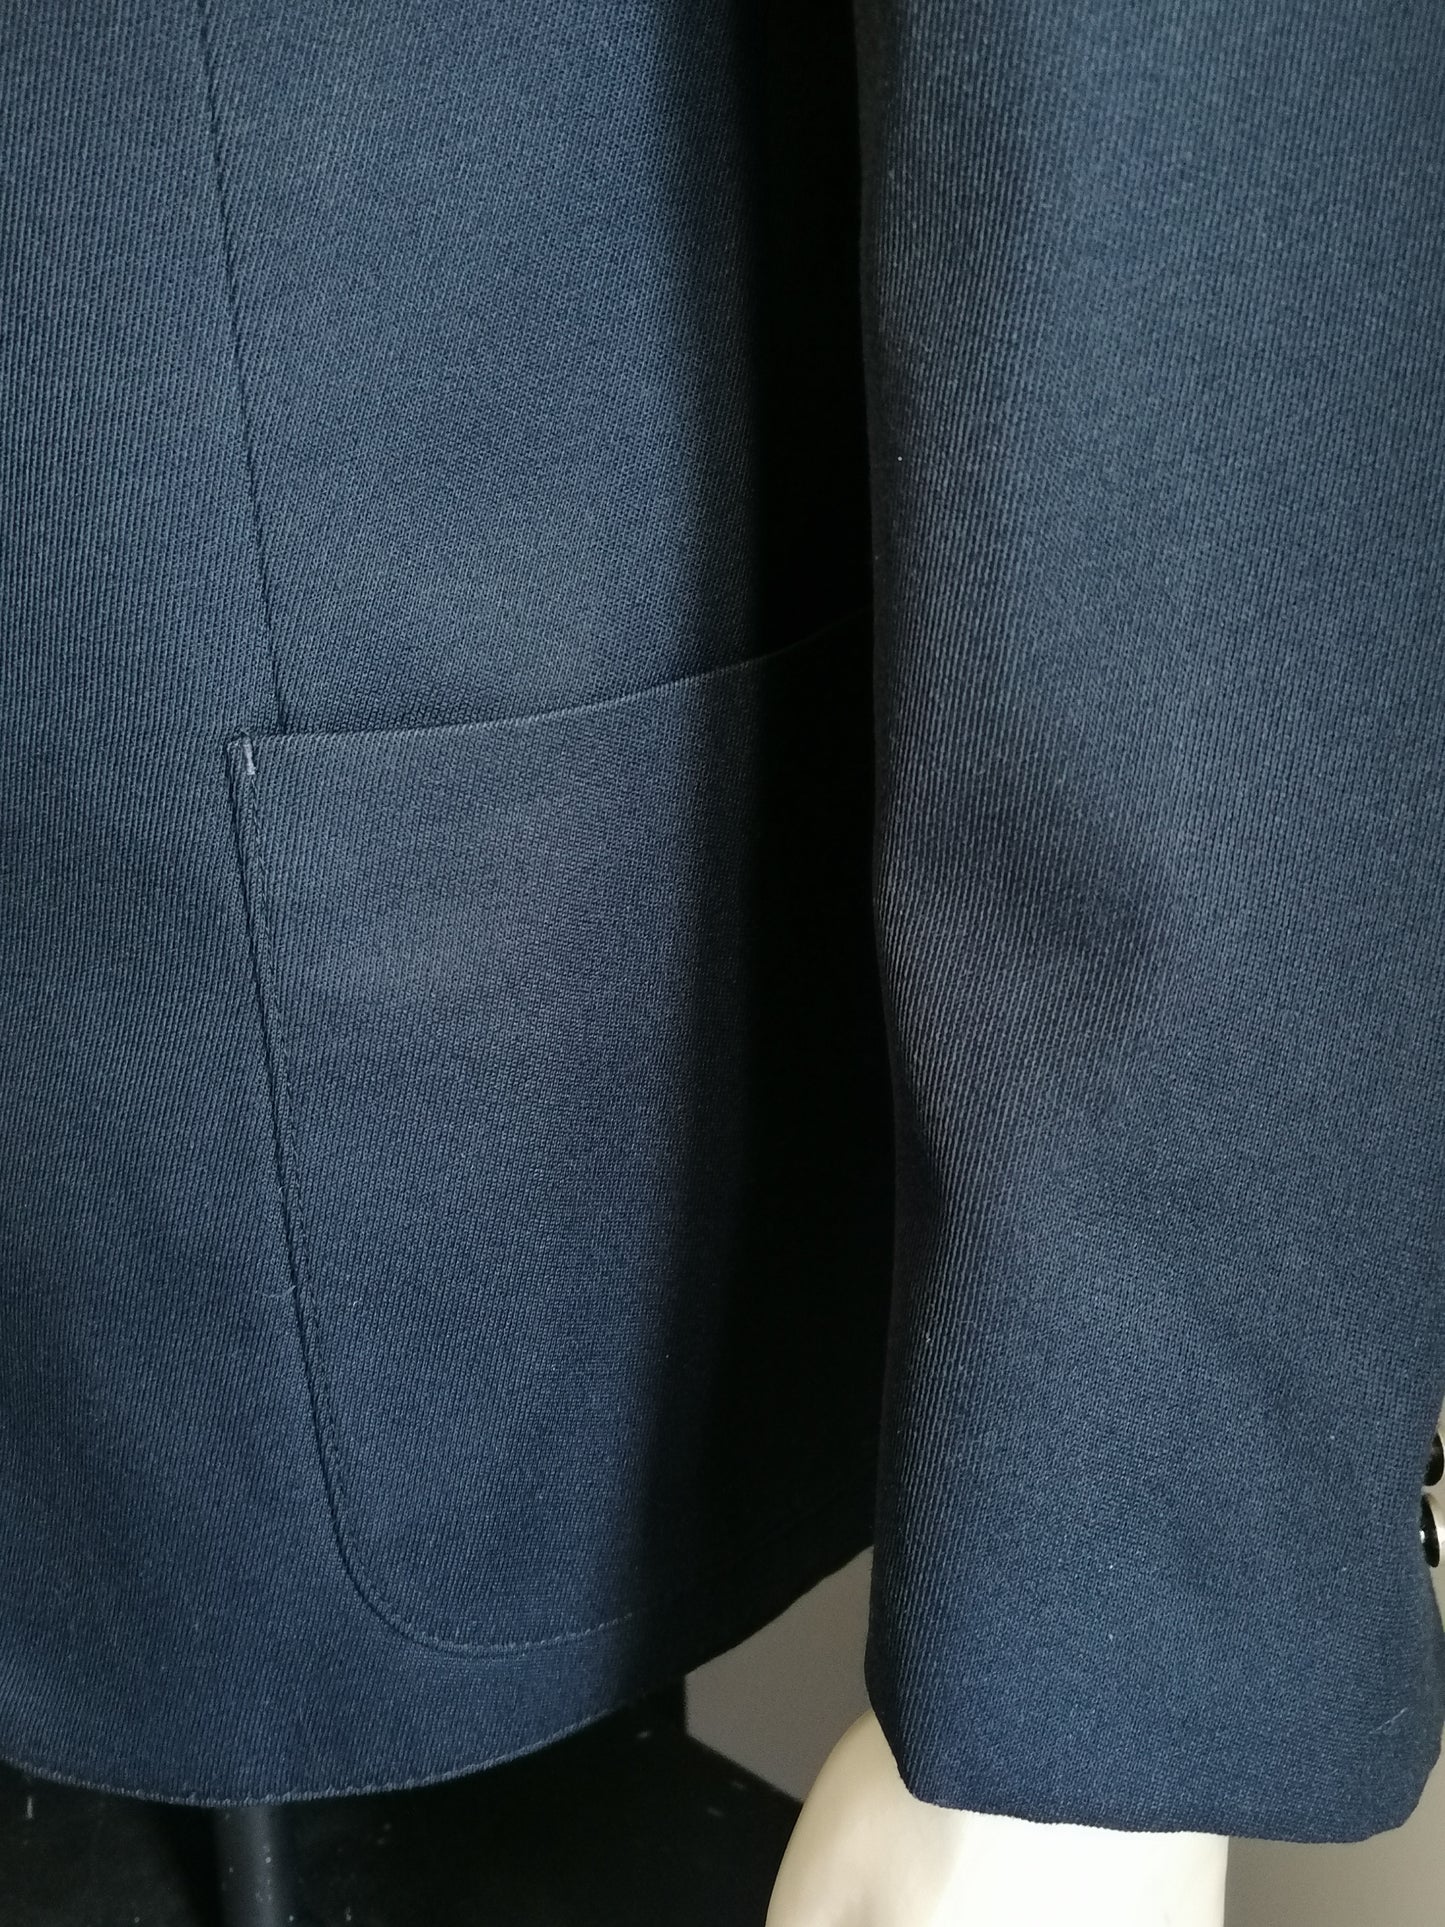 Costume di lana vintage. Colorato blu scuro. Taglia 56 / XL.